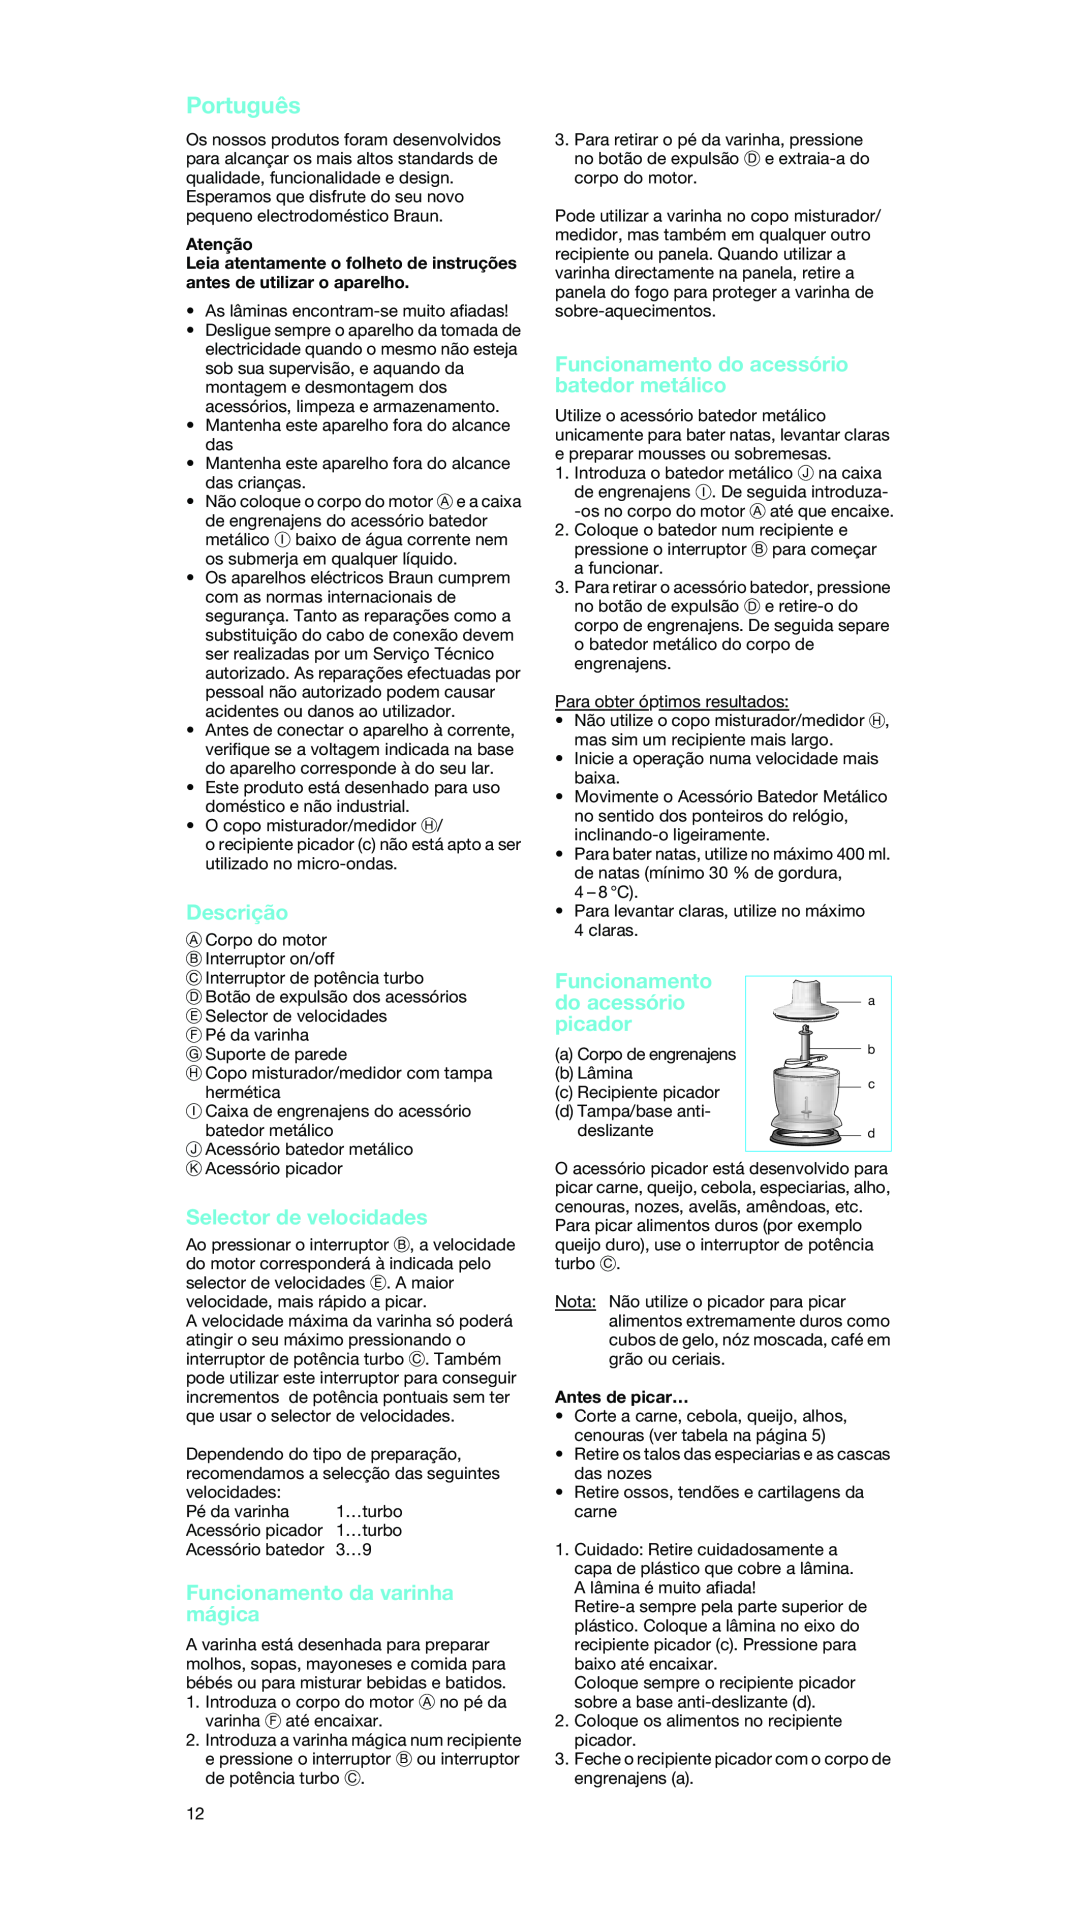 Braun MR 5550 MCA manual Português, Descrição, Funcionamento da varinha mágica, Funcionamento do acessório batedor metálico 